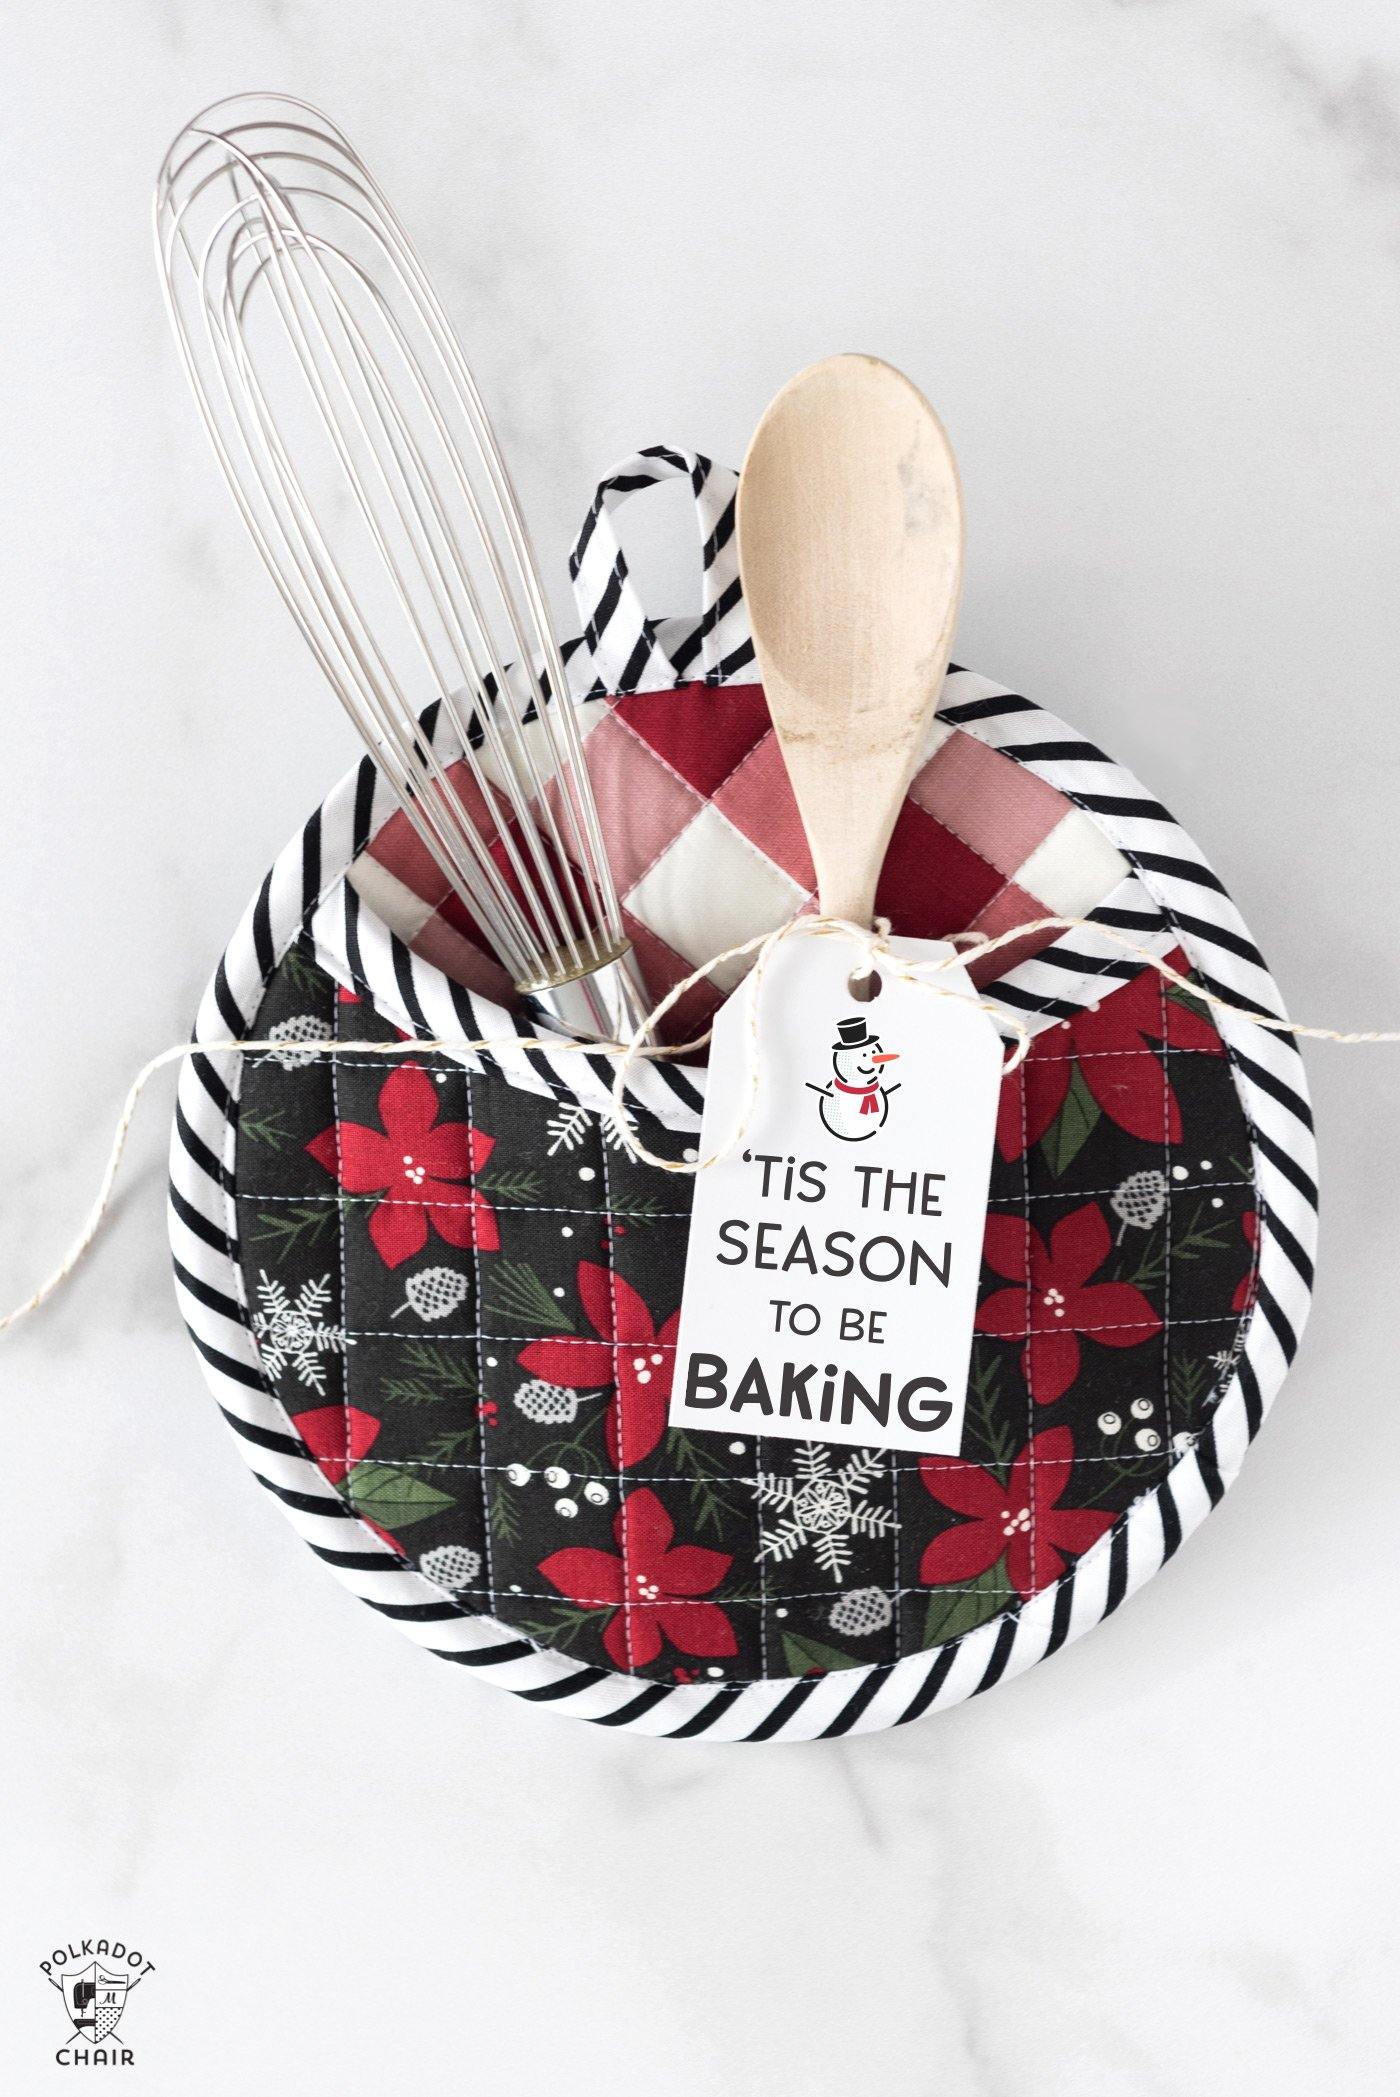 Free Printable Christmas Baking Gift Tags - The Polka Dot Chair